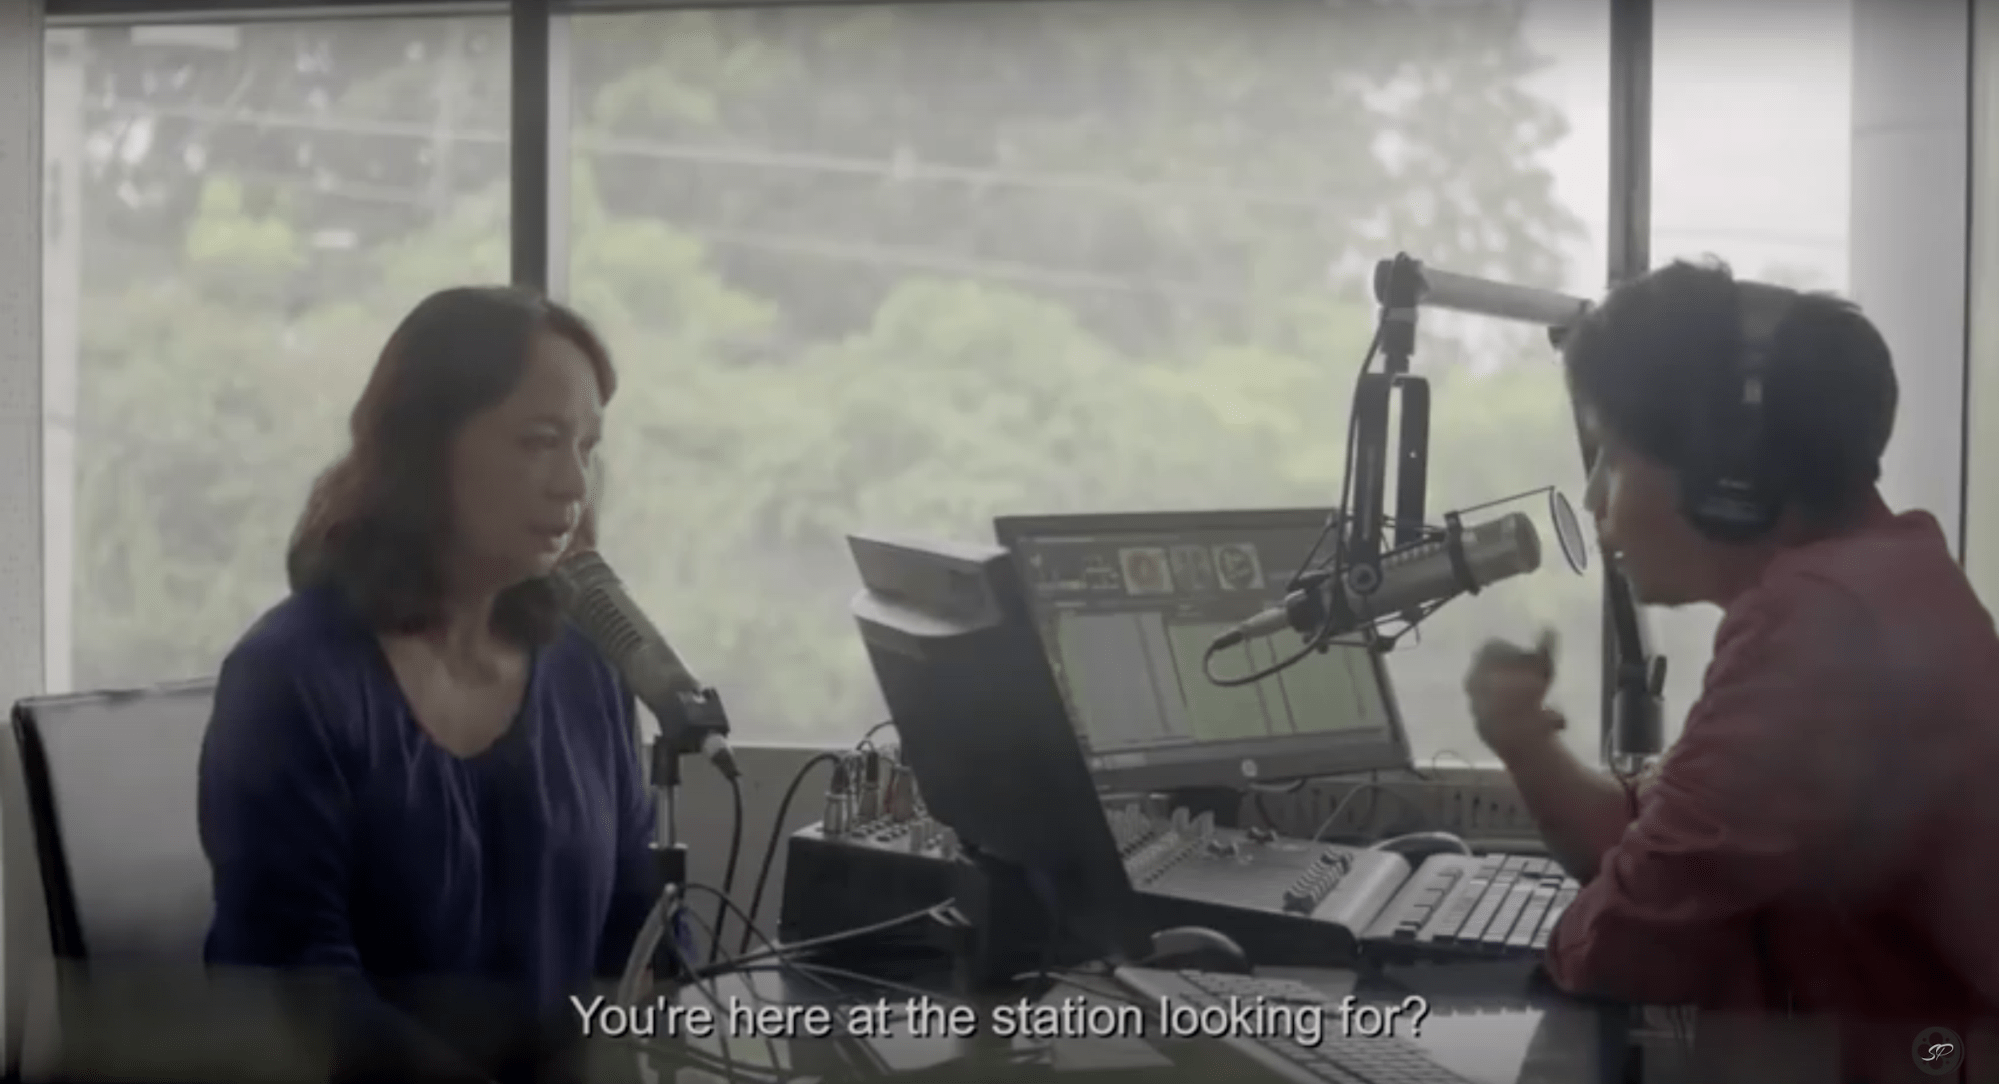 woman at a radio station